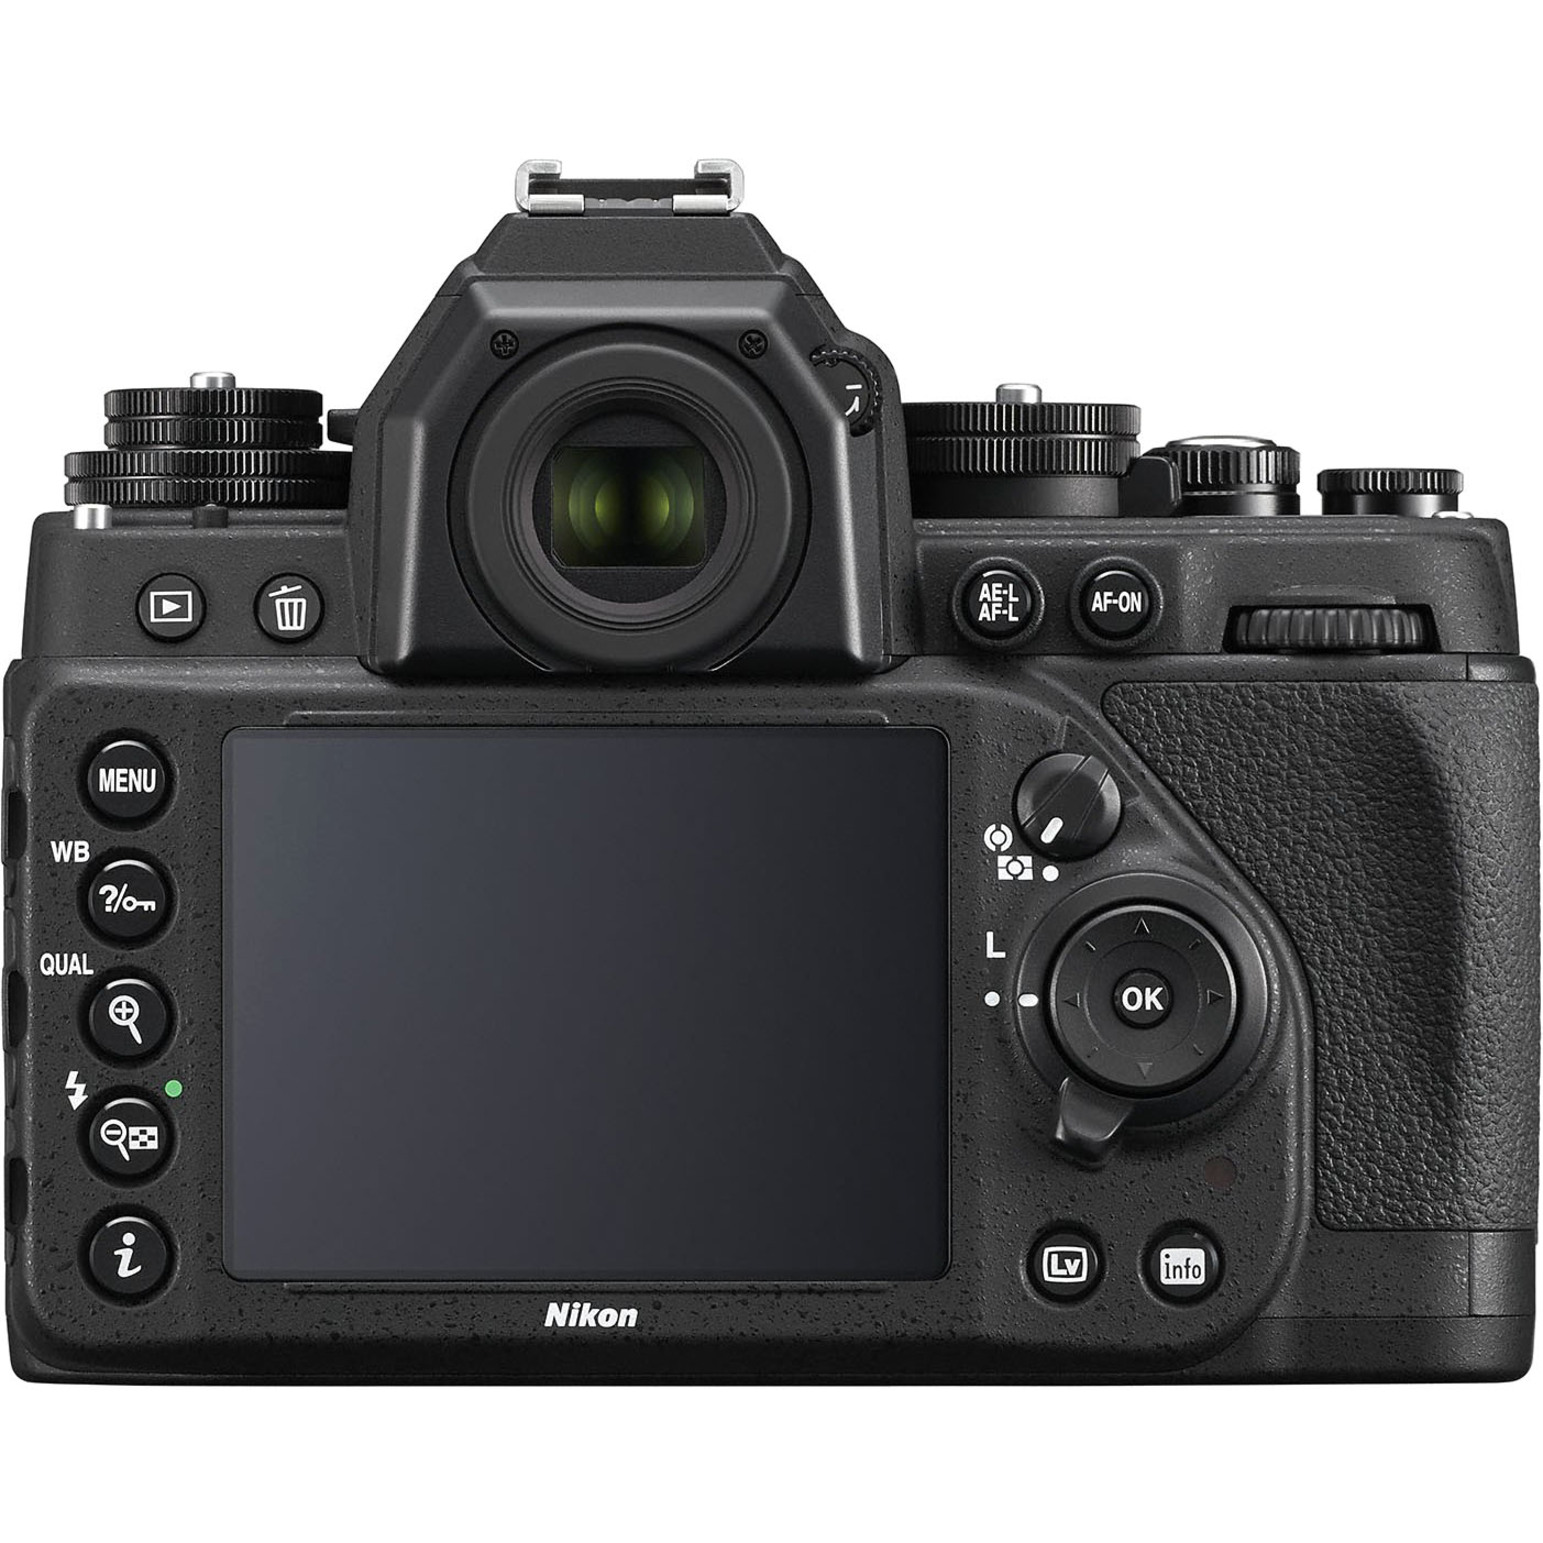 Nikon Df 16.2 Megapixel Digital SLR Camera with Lens, 1.97", Black - image 3 of 5